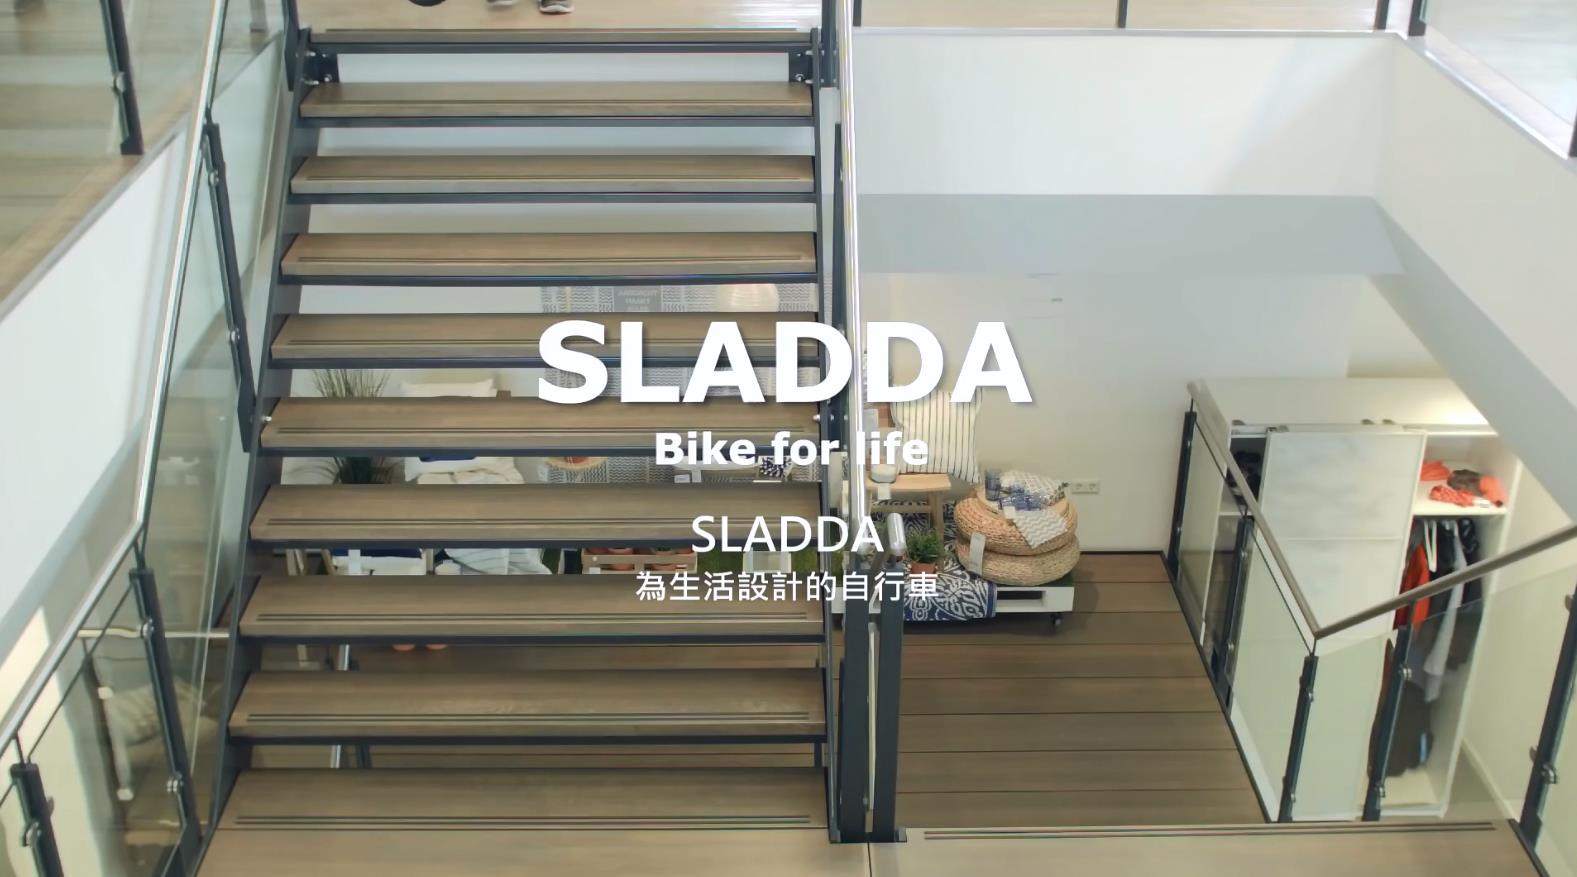 IKEA SLADDA 为生活設計的自行车 宜家广告